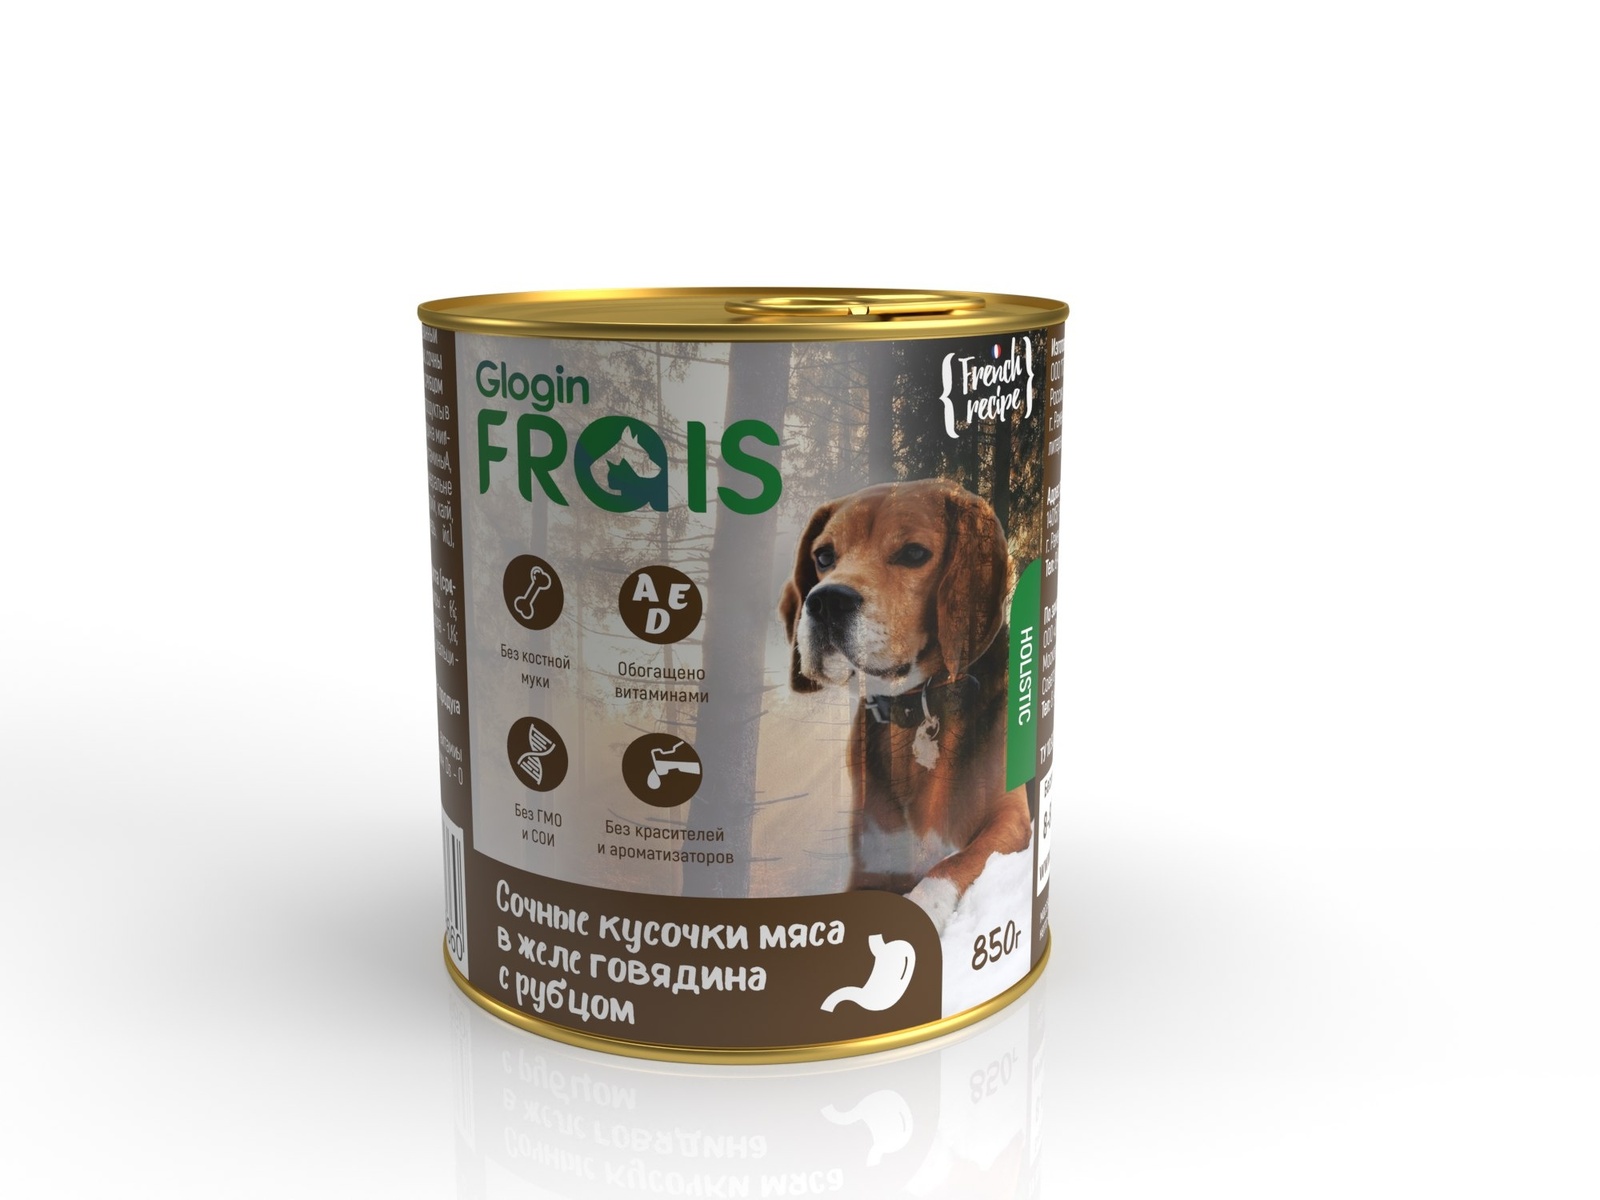 Frais Frais консервы для собак мясные кусочки в желе, с говядиной и рубцом (850 г) корм для собак frais holistic dog мясные кусочки с говядиной в желе банка 420г